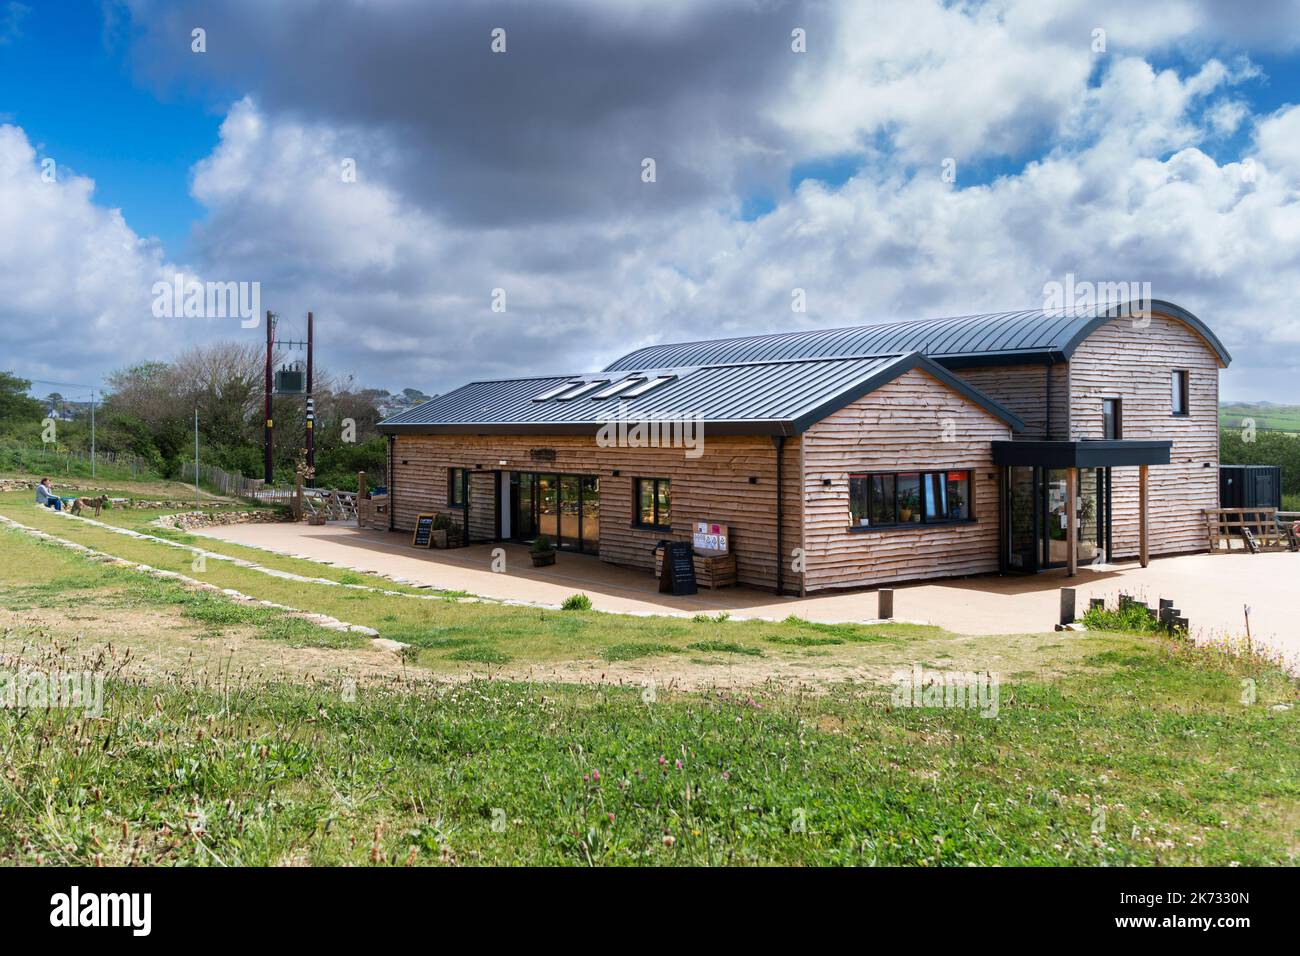 Die Kantine und das Gemeinschaftsgebäude Kowel Gwenen Newquay Orchard eine Gemeinschaftsinitiative in Newquay in Cornwall im Vereinigten Königreich. Stockfoto